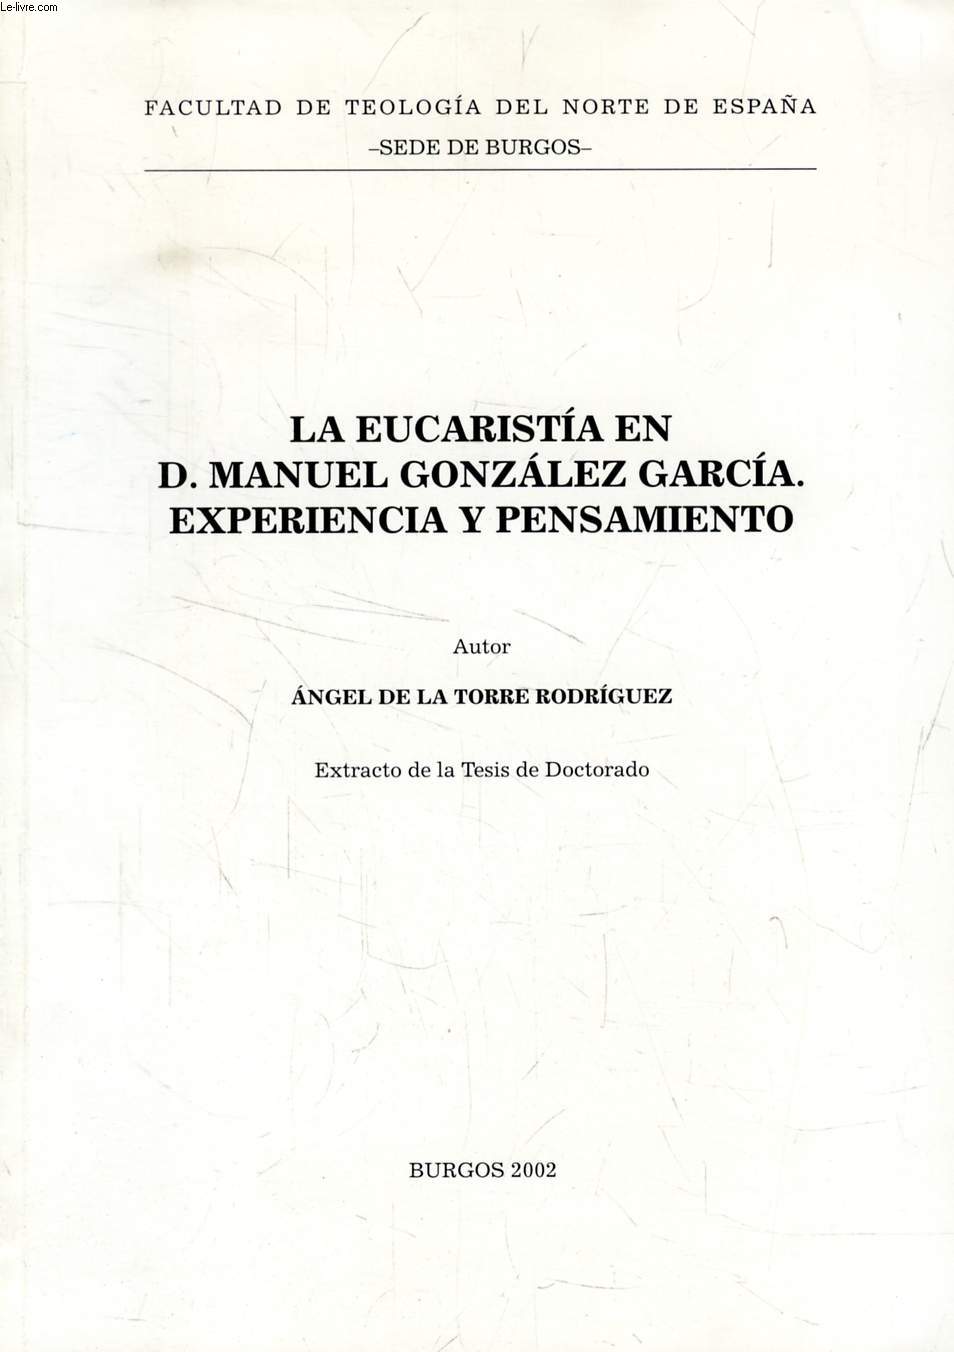 LA EUCARISTIA EN D. MANUEL GONZALEZ GARCIA, EXPERIENCIA Y PENSAMIENTO (EXTRACTO DE LA TESIS)